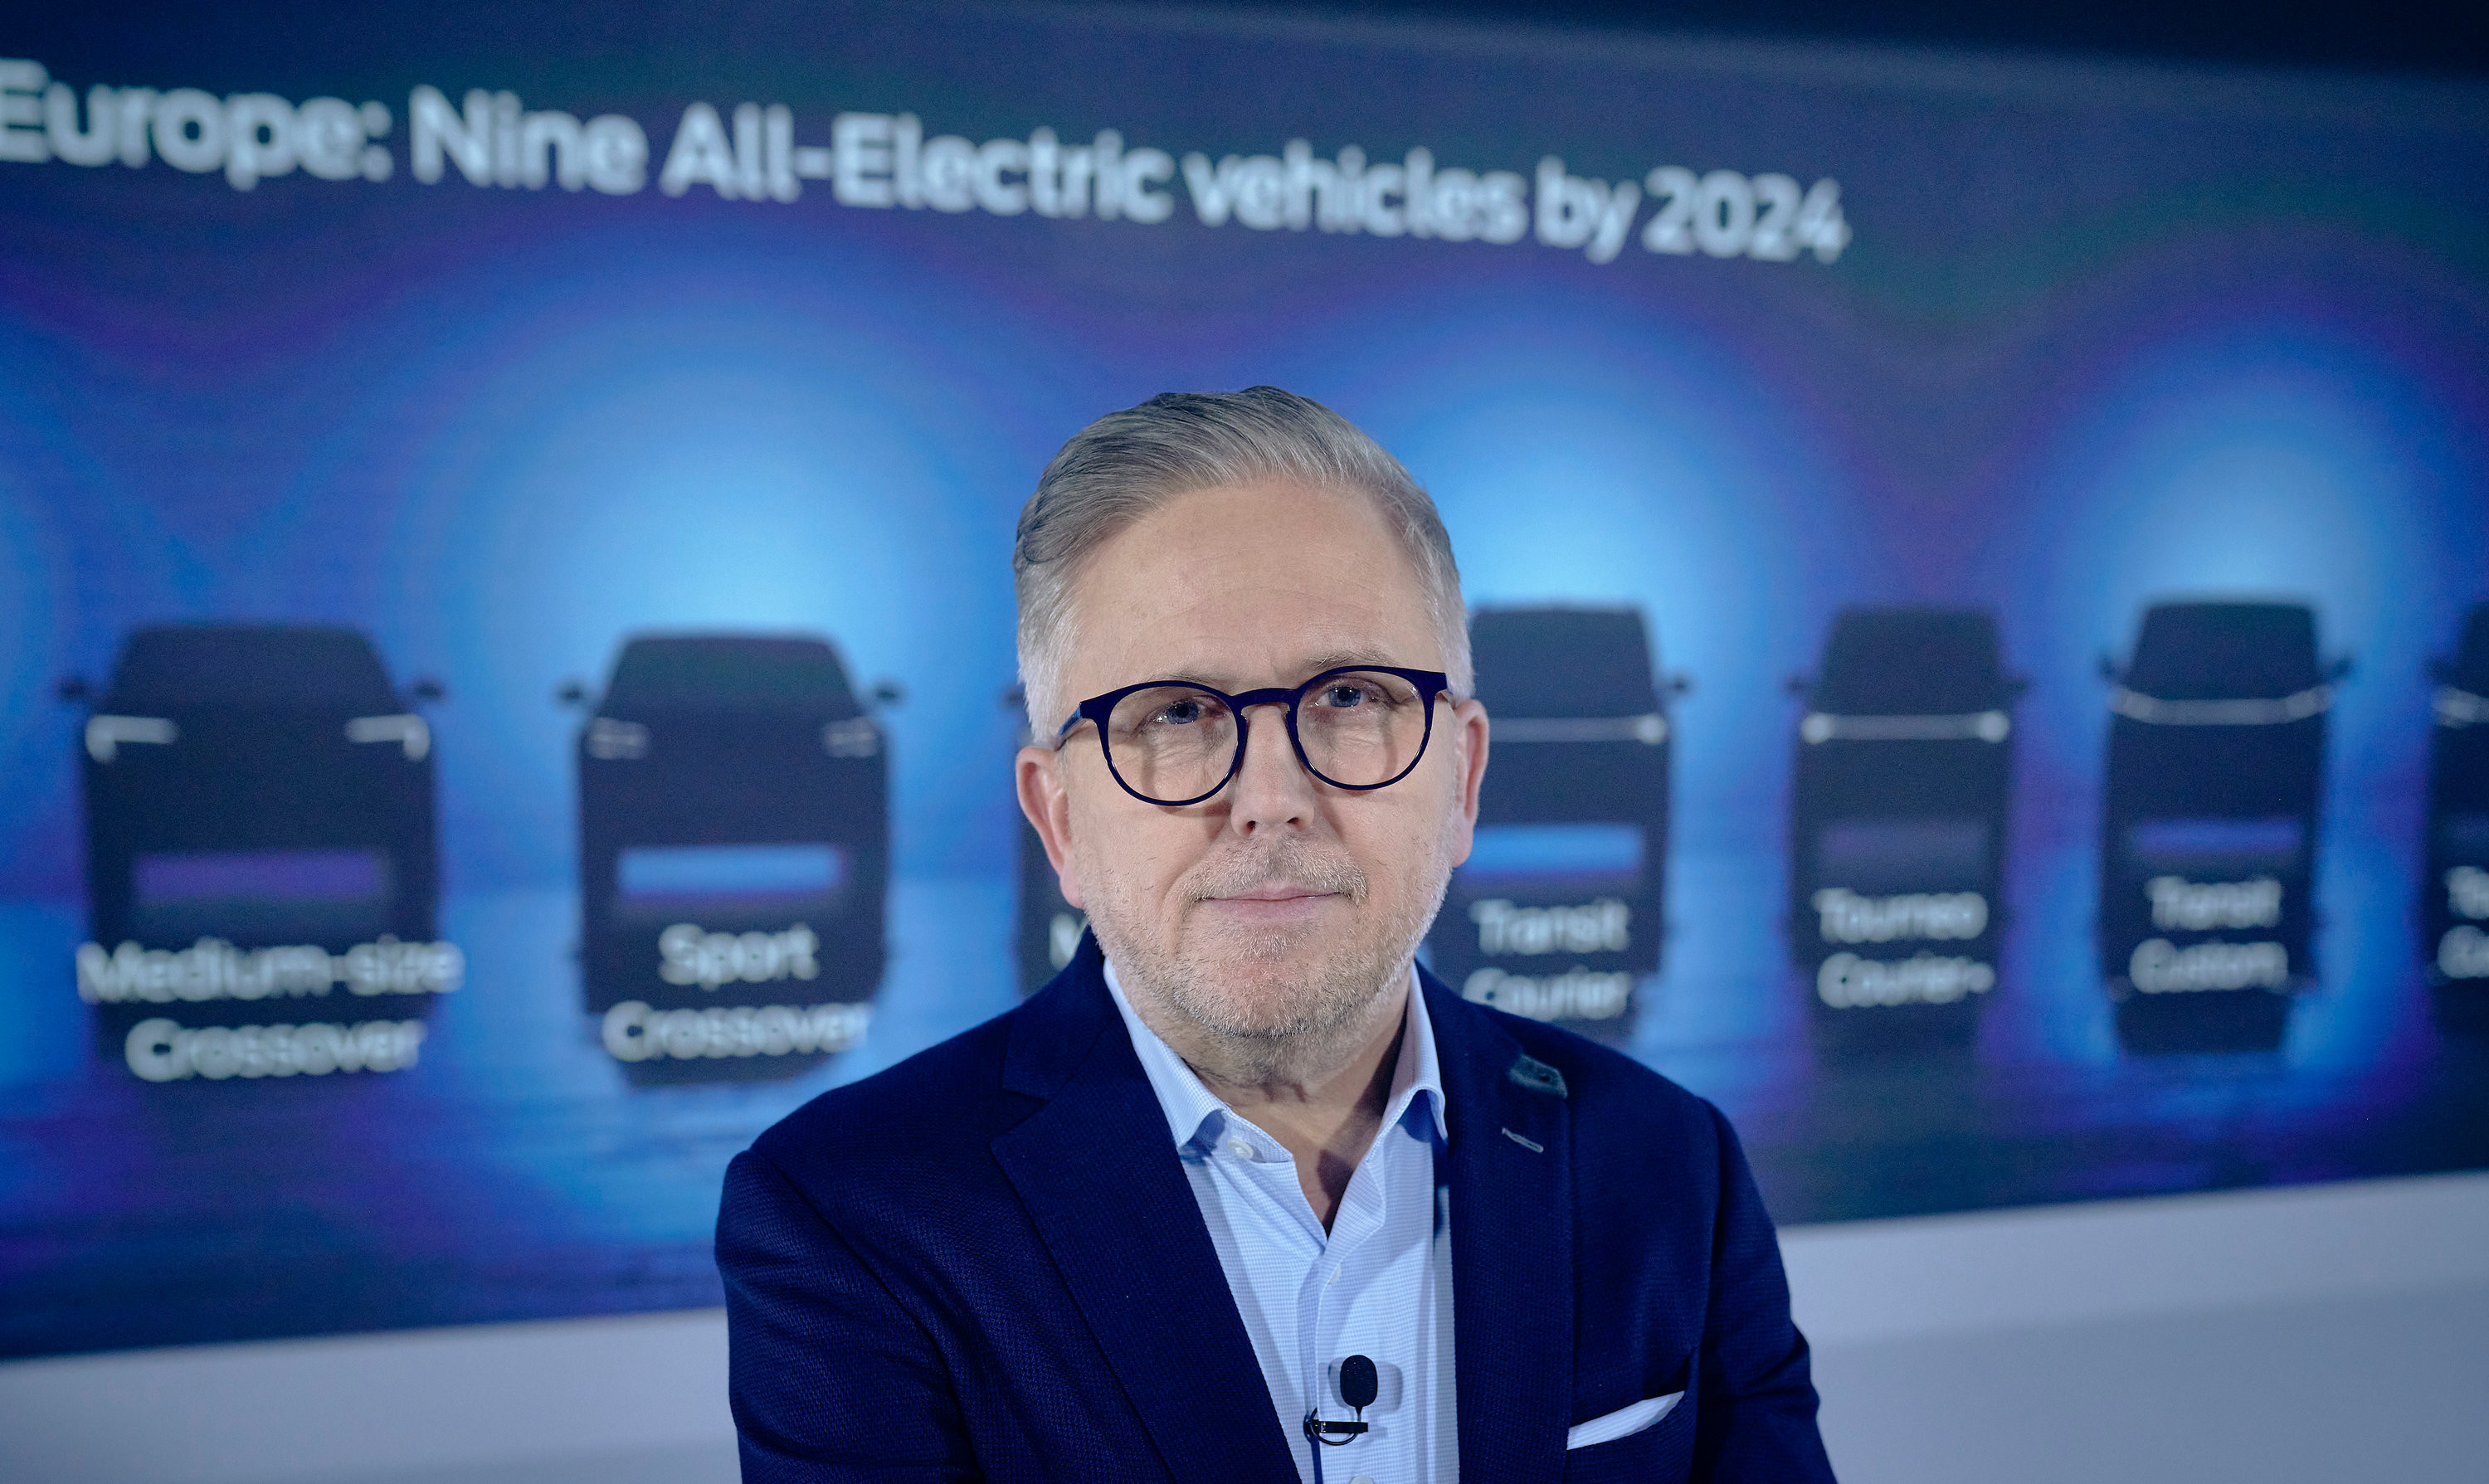 7 νέα πλήρως ηλεκτρικά και συνδεδεμένα μοντέλα από τη Ford μέχρι το 2024